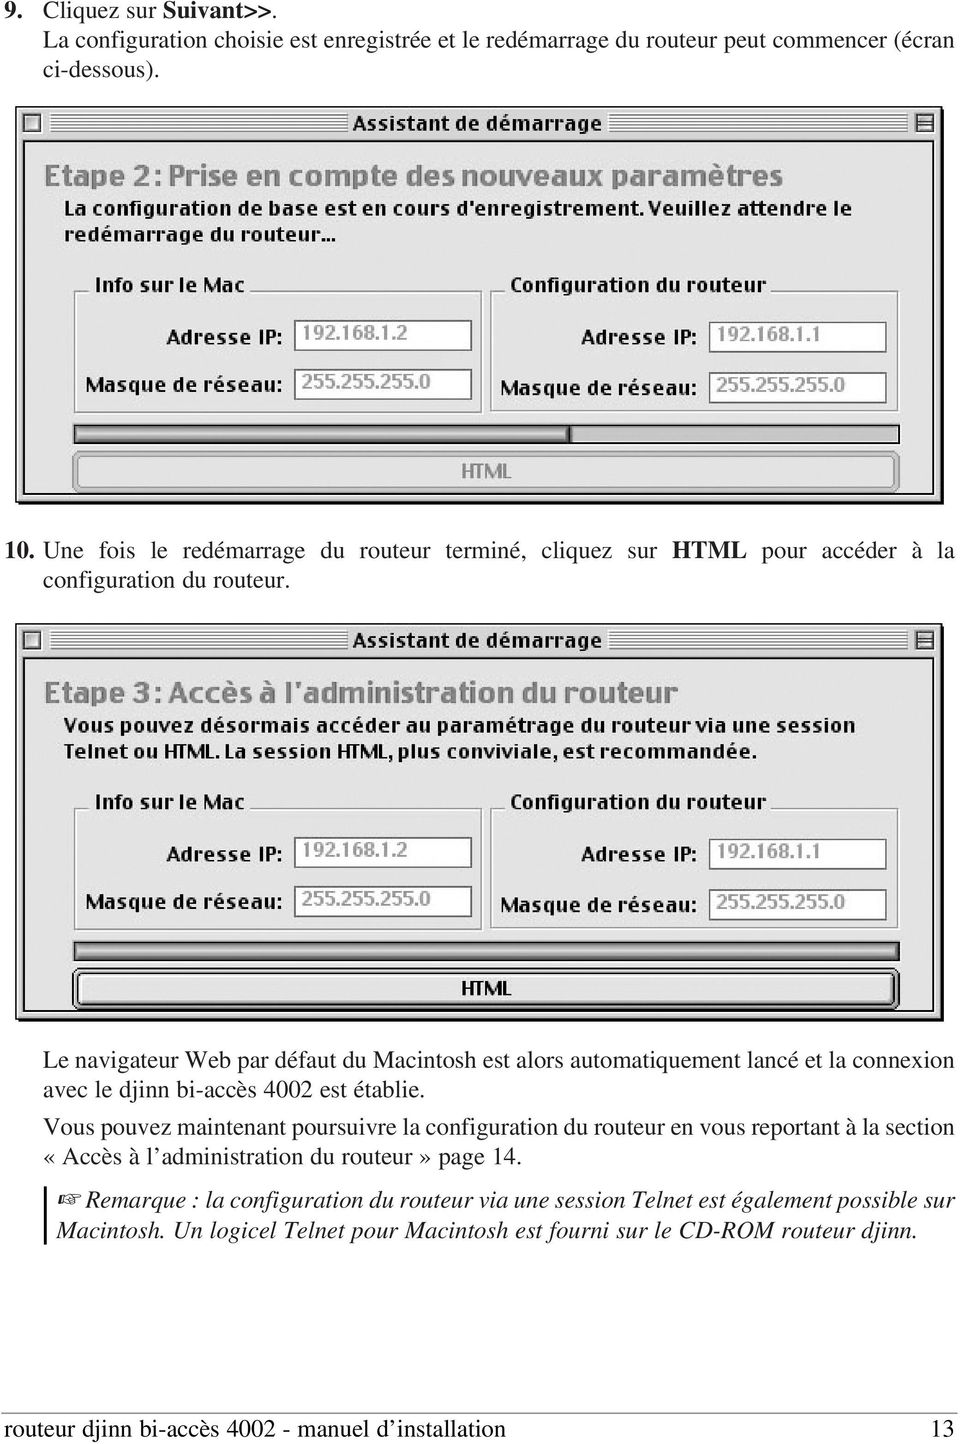 Le navigateur Web par défaut du Macintosh est alors automatiquement lancé et la connexion avec le djinn bi-accès 4002 est établie.